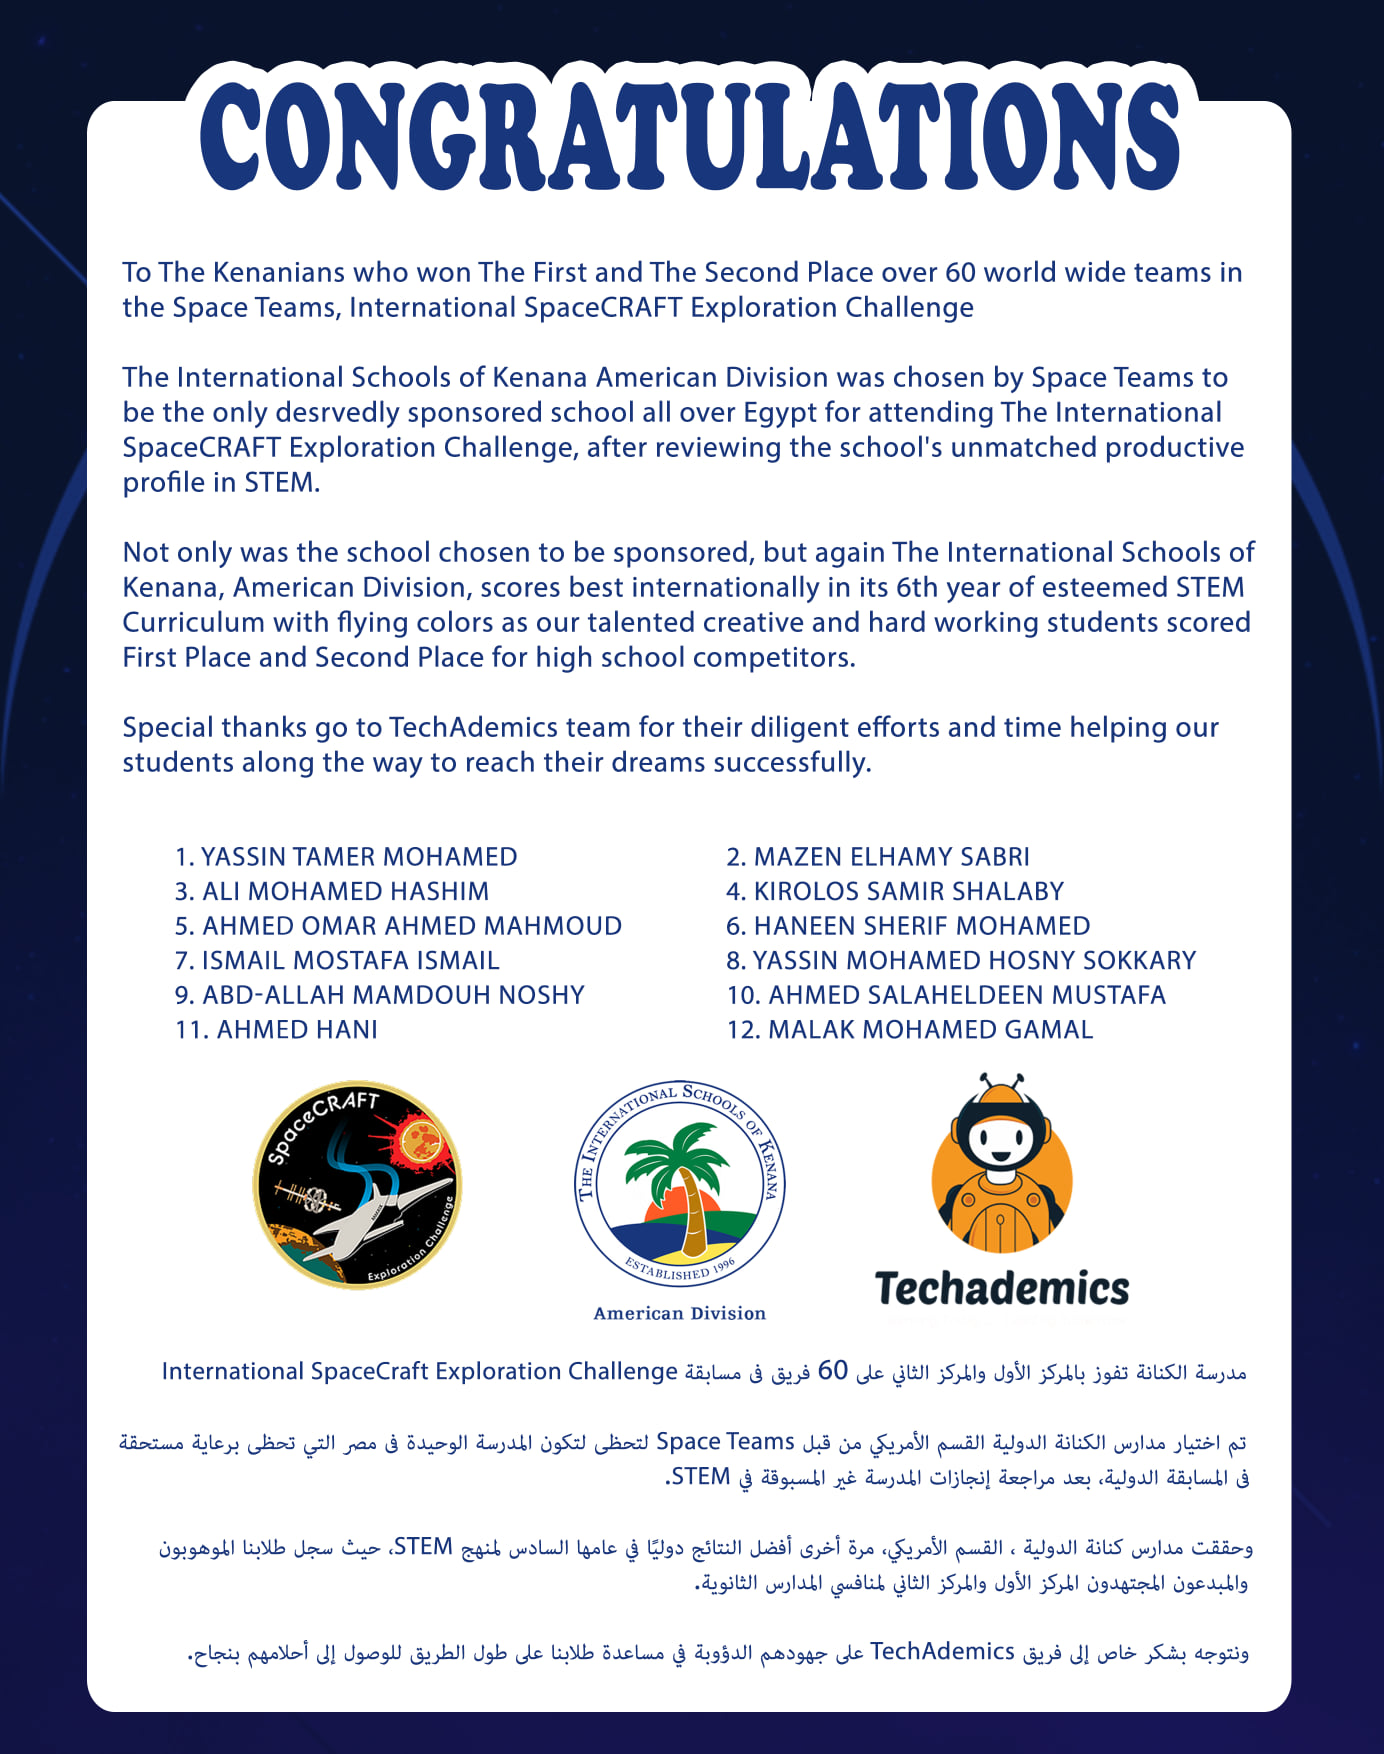 International SpaceCraft Exploration Challenge